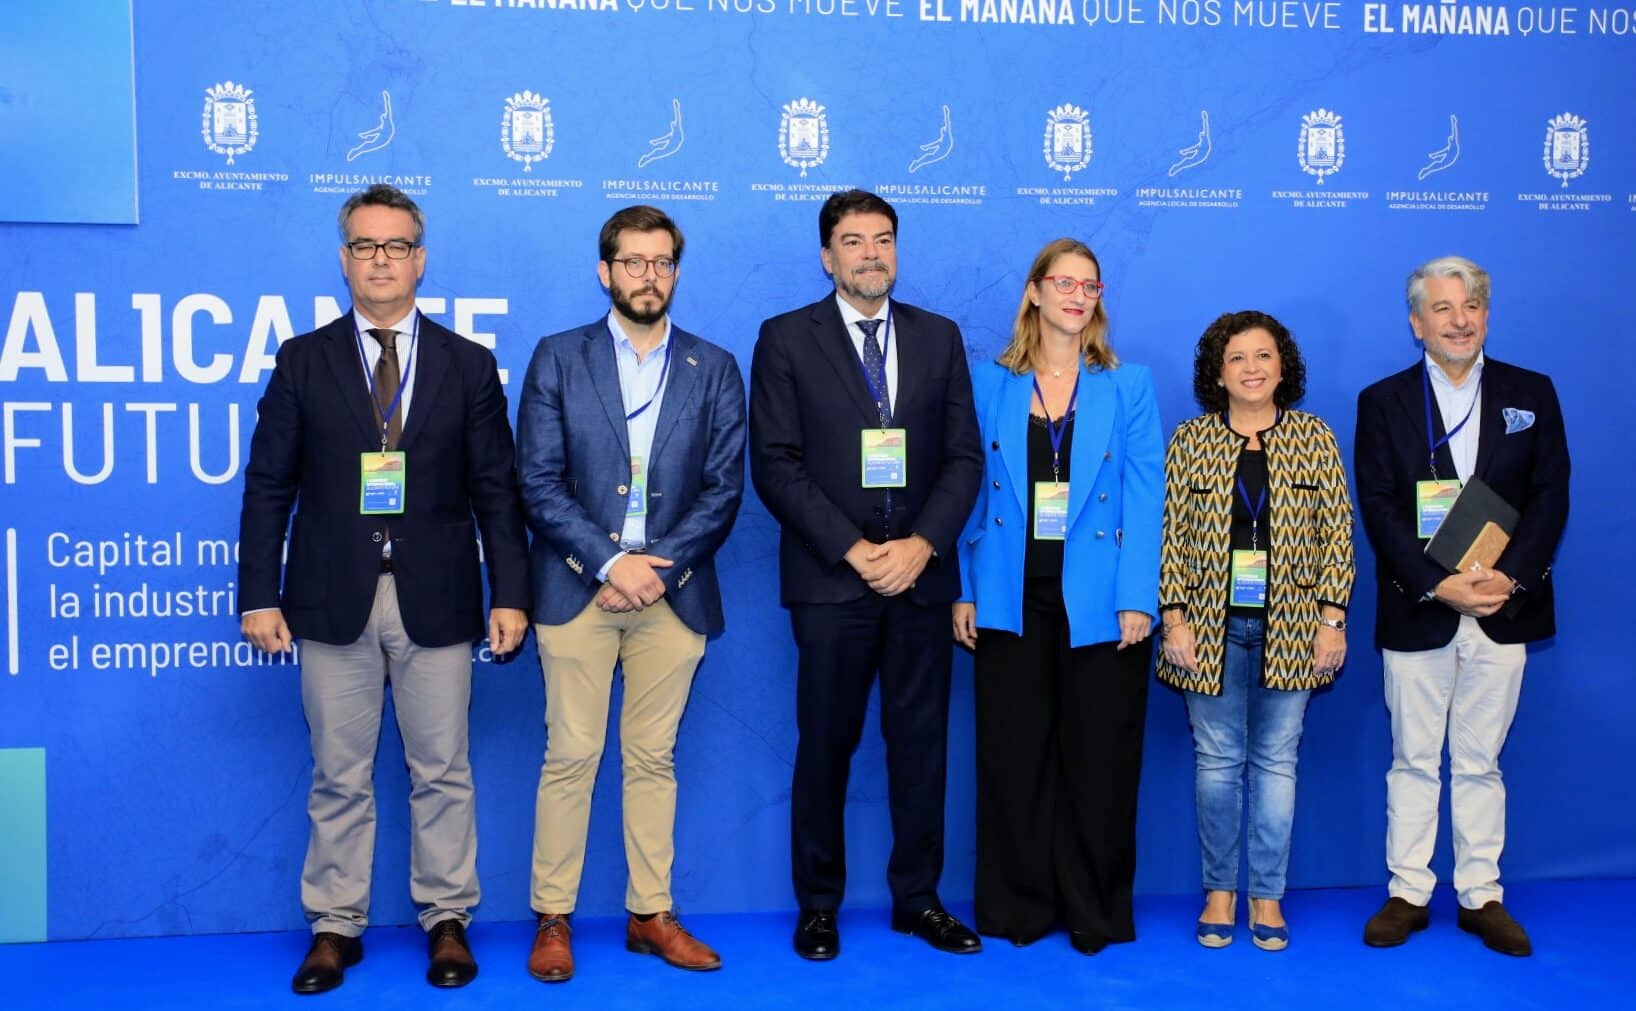 Barcala anuncia un encuentro internacional de mujeres líderes de empresas tecnológicas en la apertura del Congreso Alicante Futura